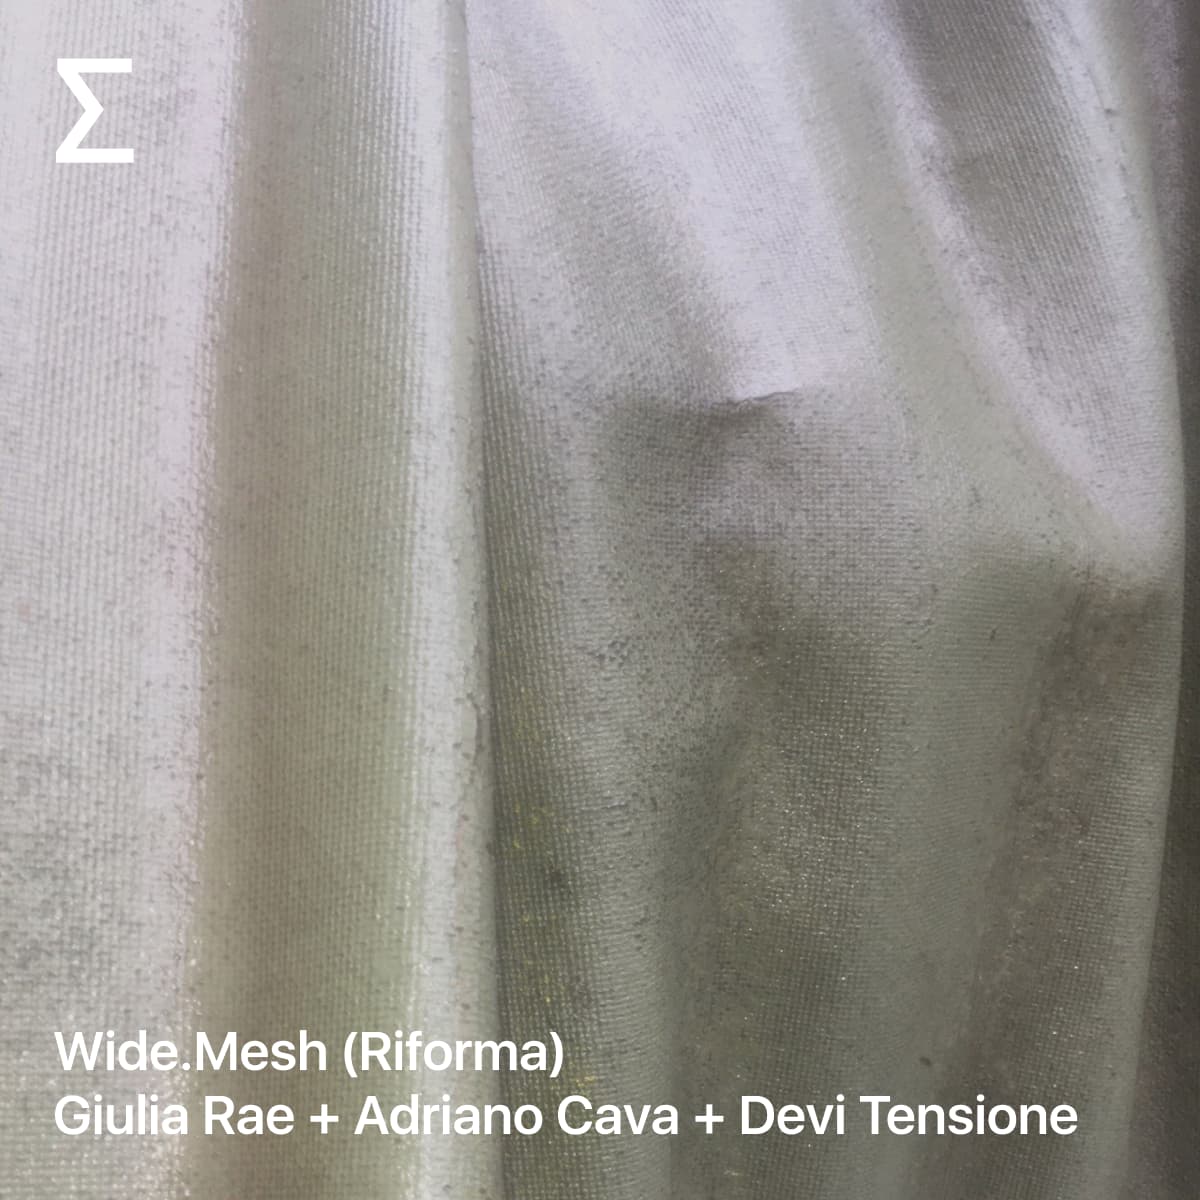 Wide.Mesh (Riforma) – Giulia Rae + Adriano Cava + Devi Tensione